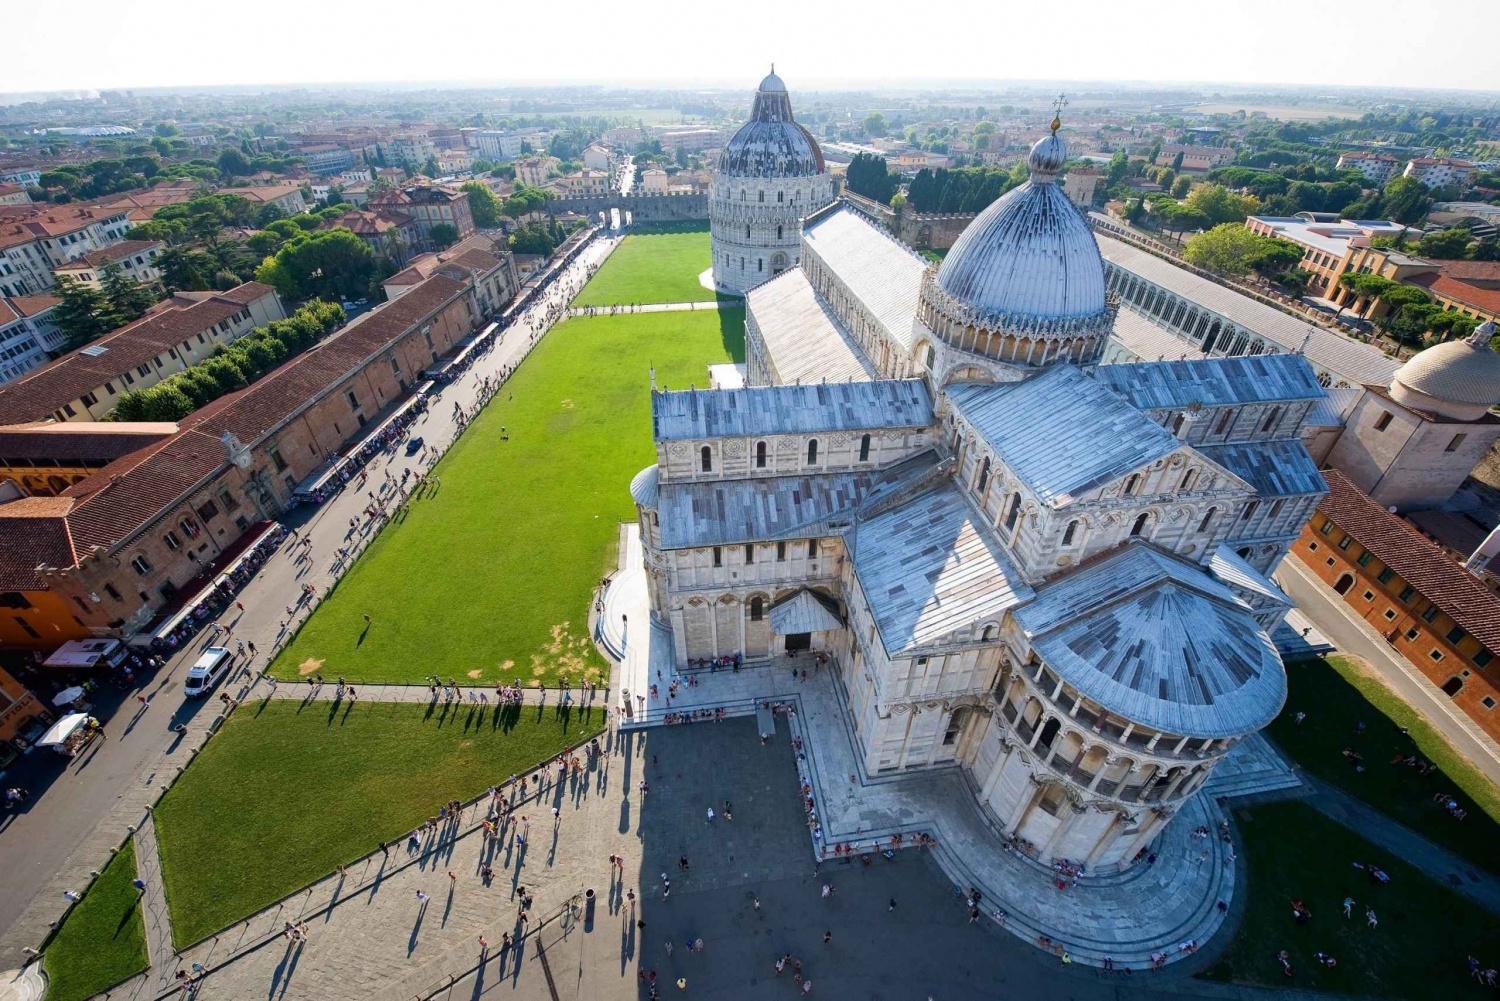 Desde Florencia: Excursión privada de un día a Pisa y Lucca